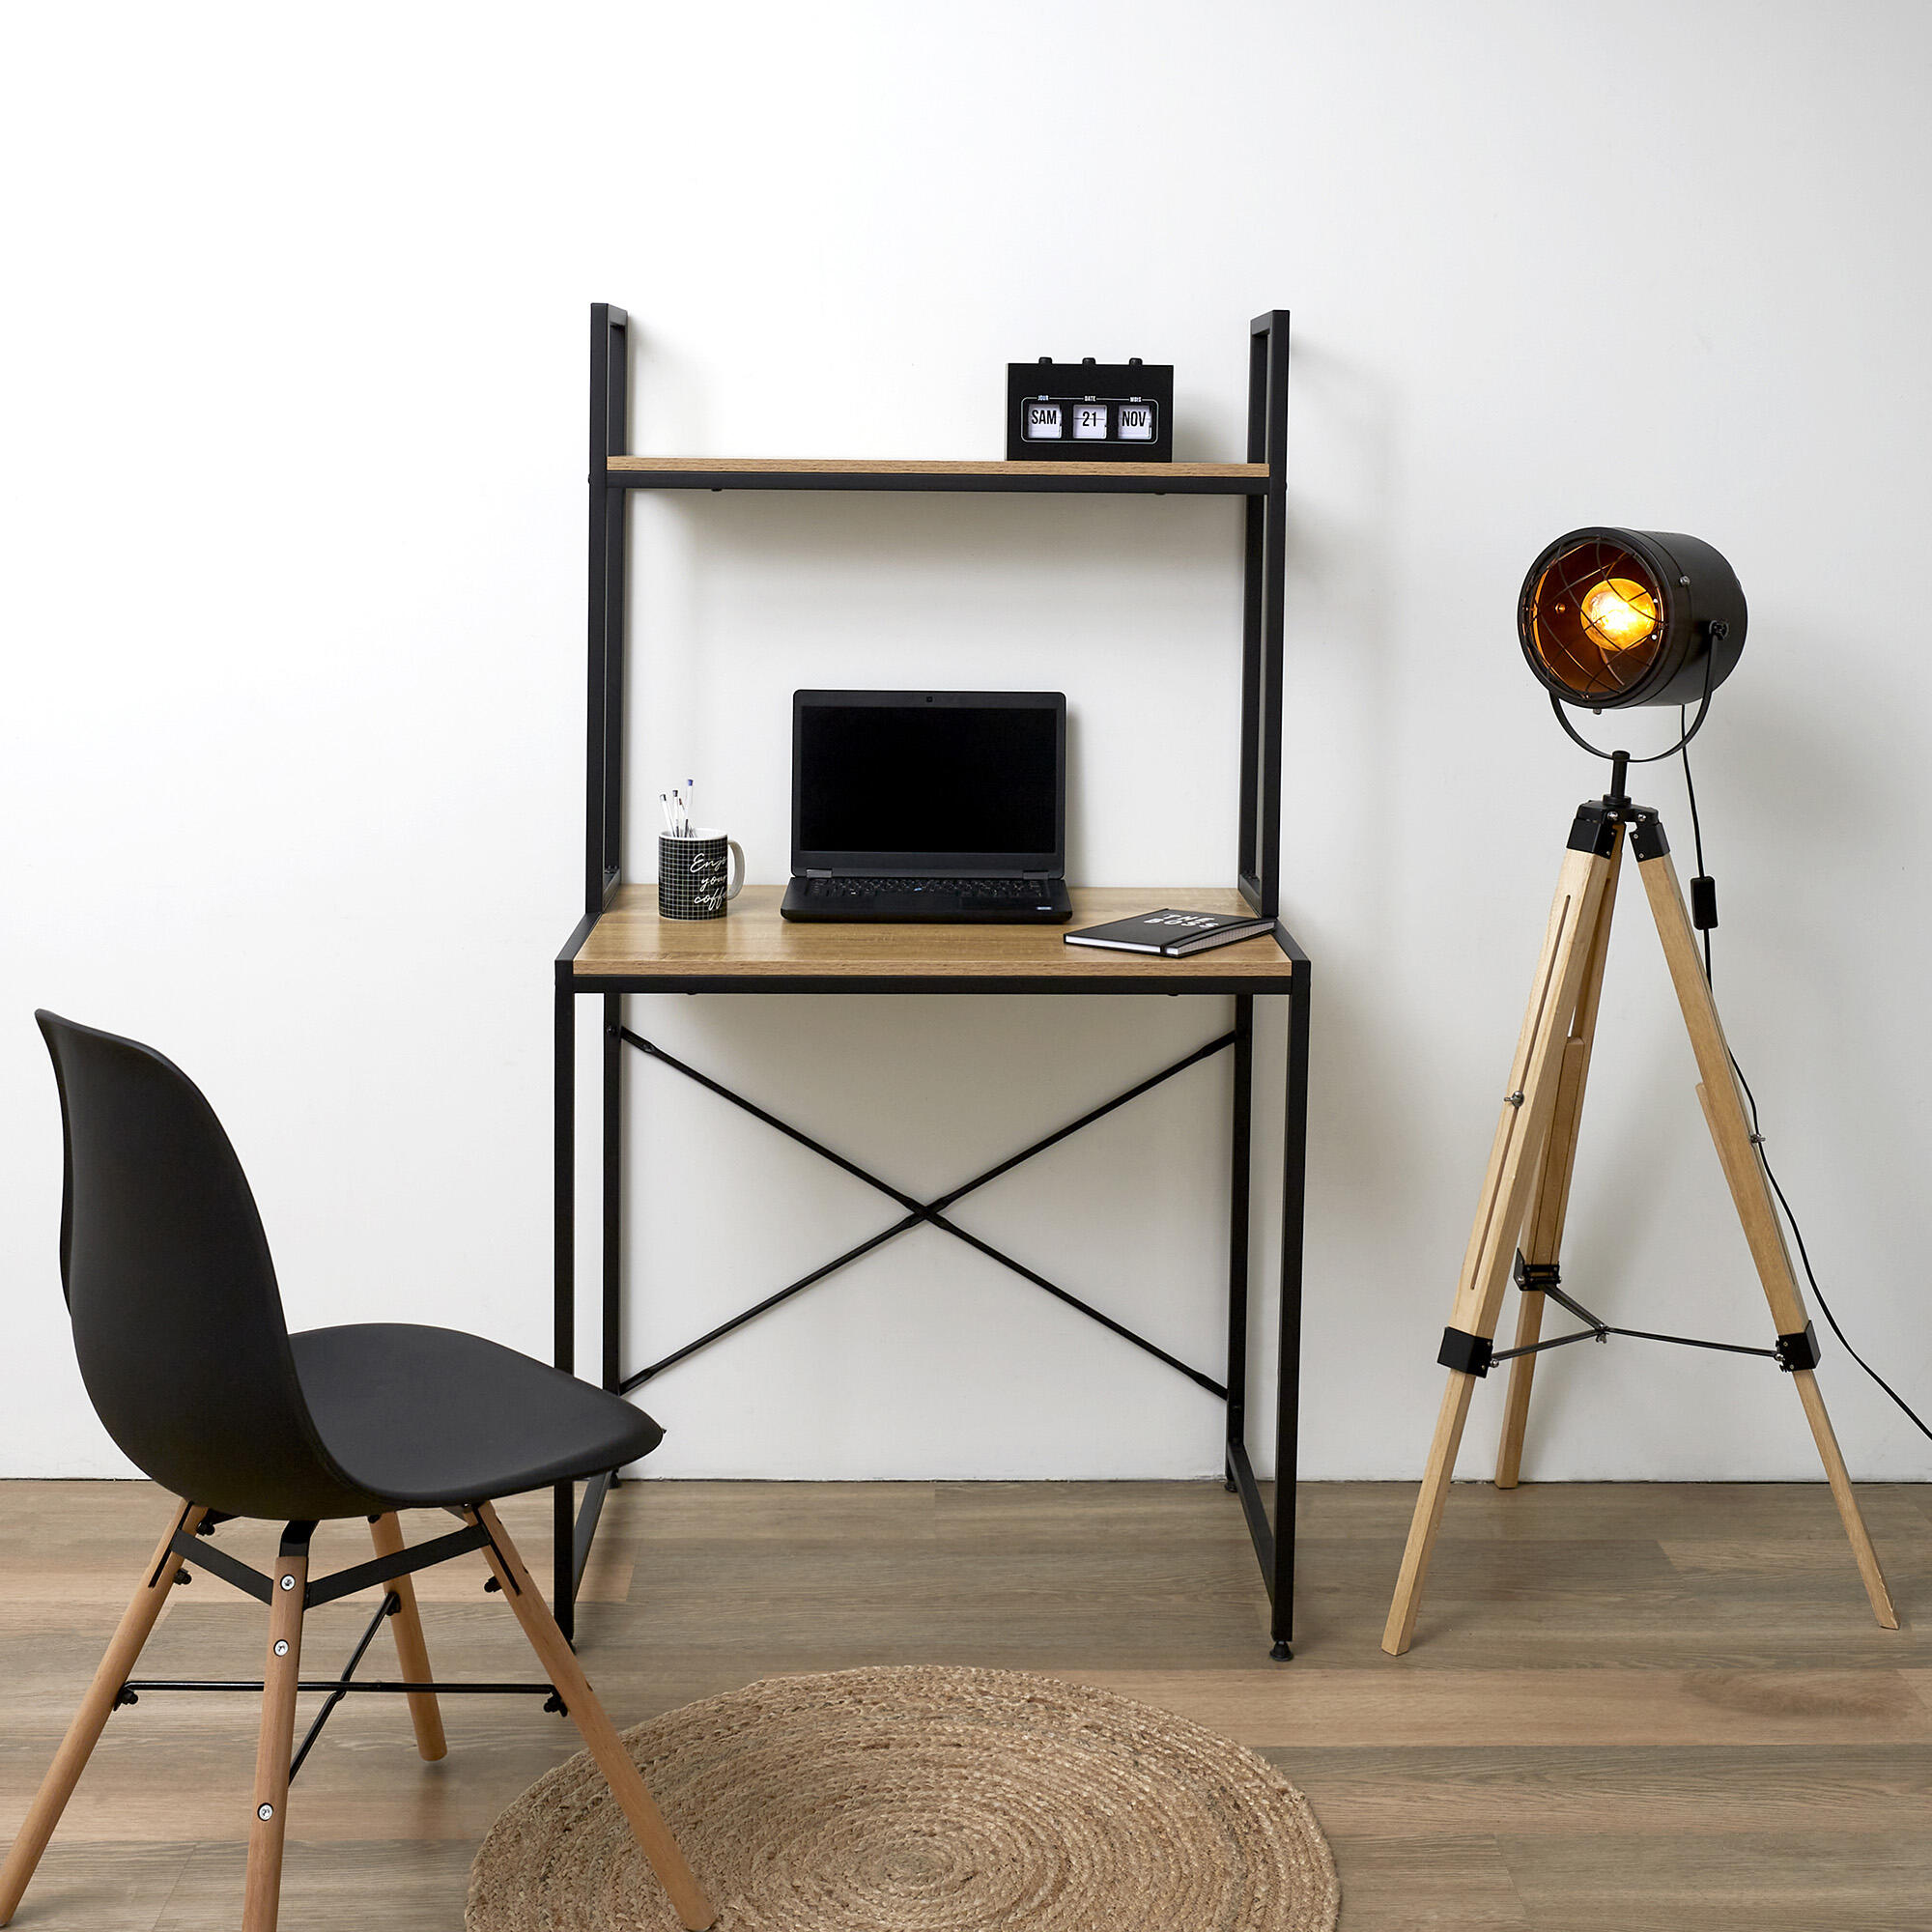 Mesa de escritorio de MDF color negro 70x60x100cm